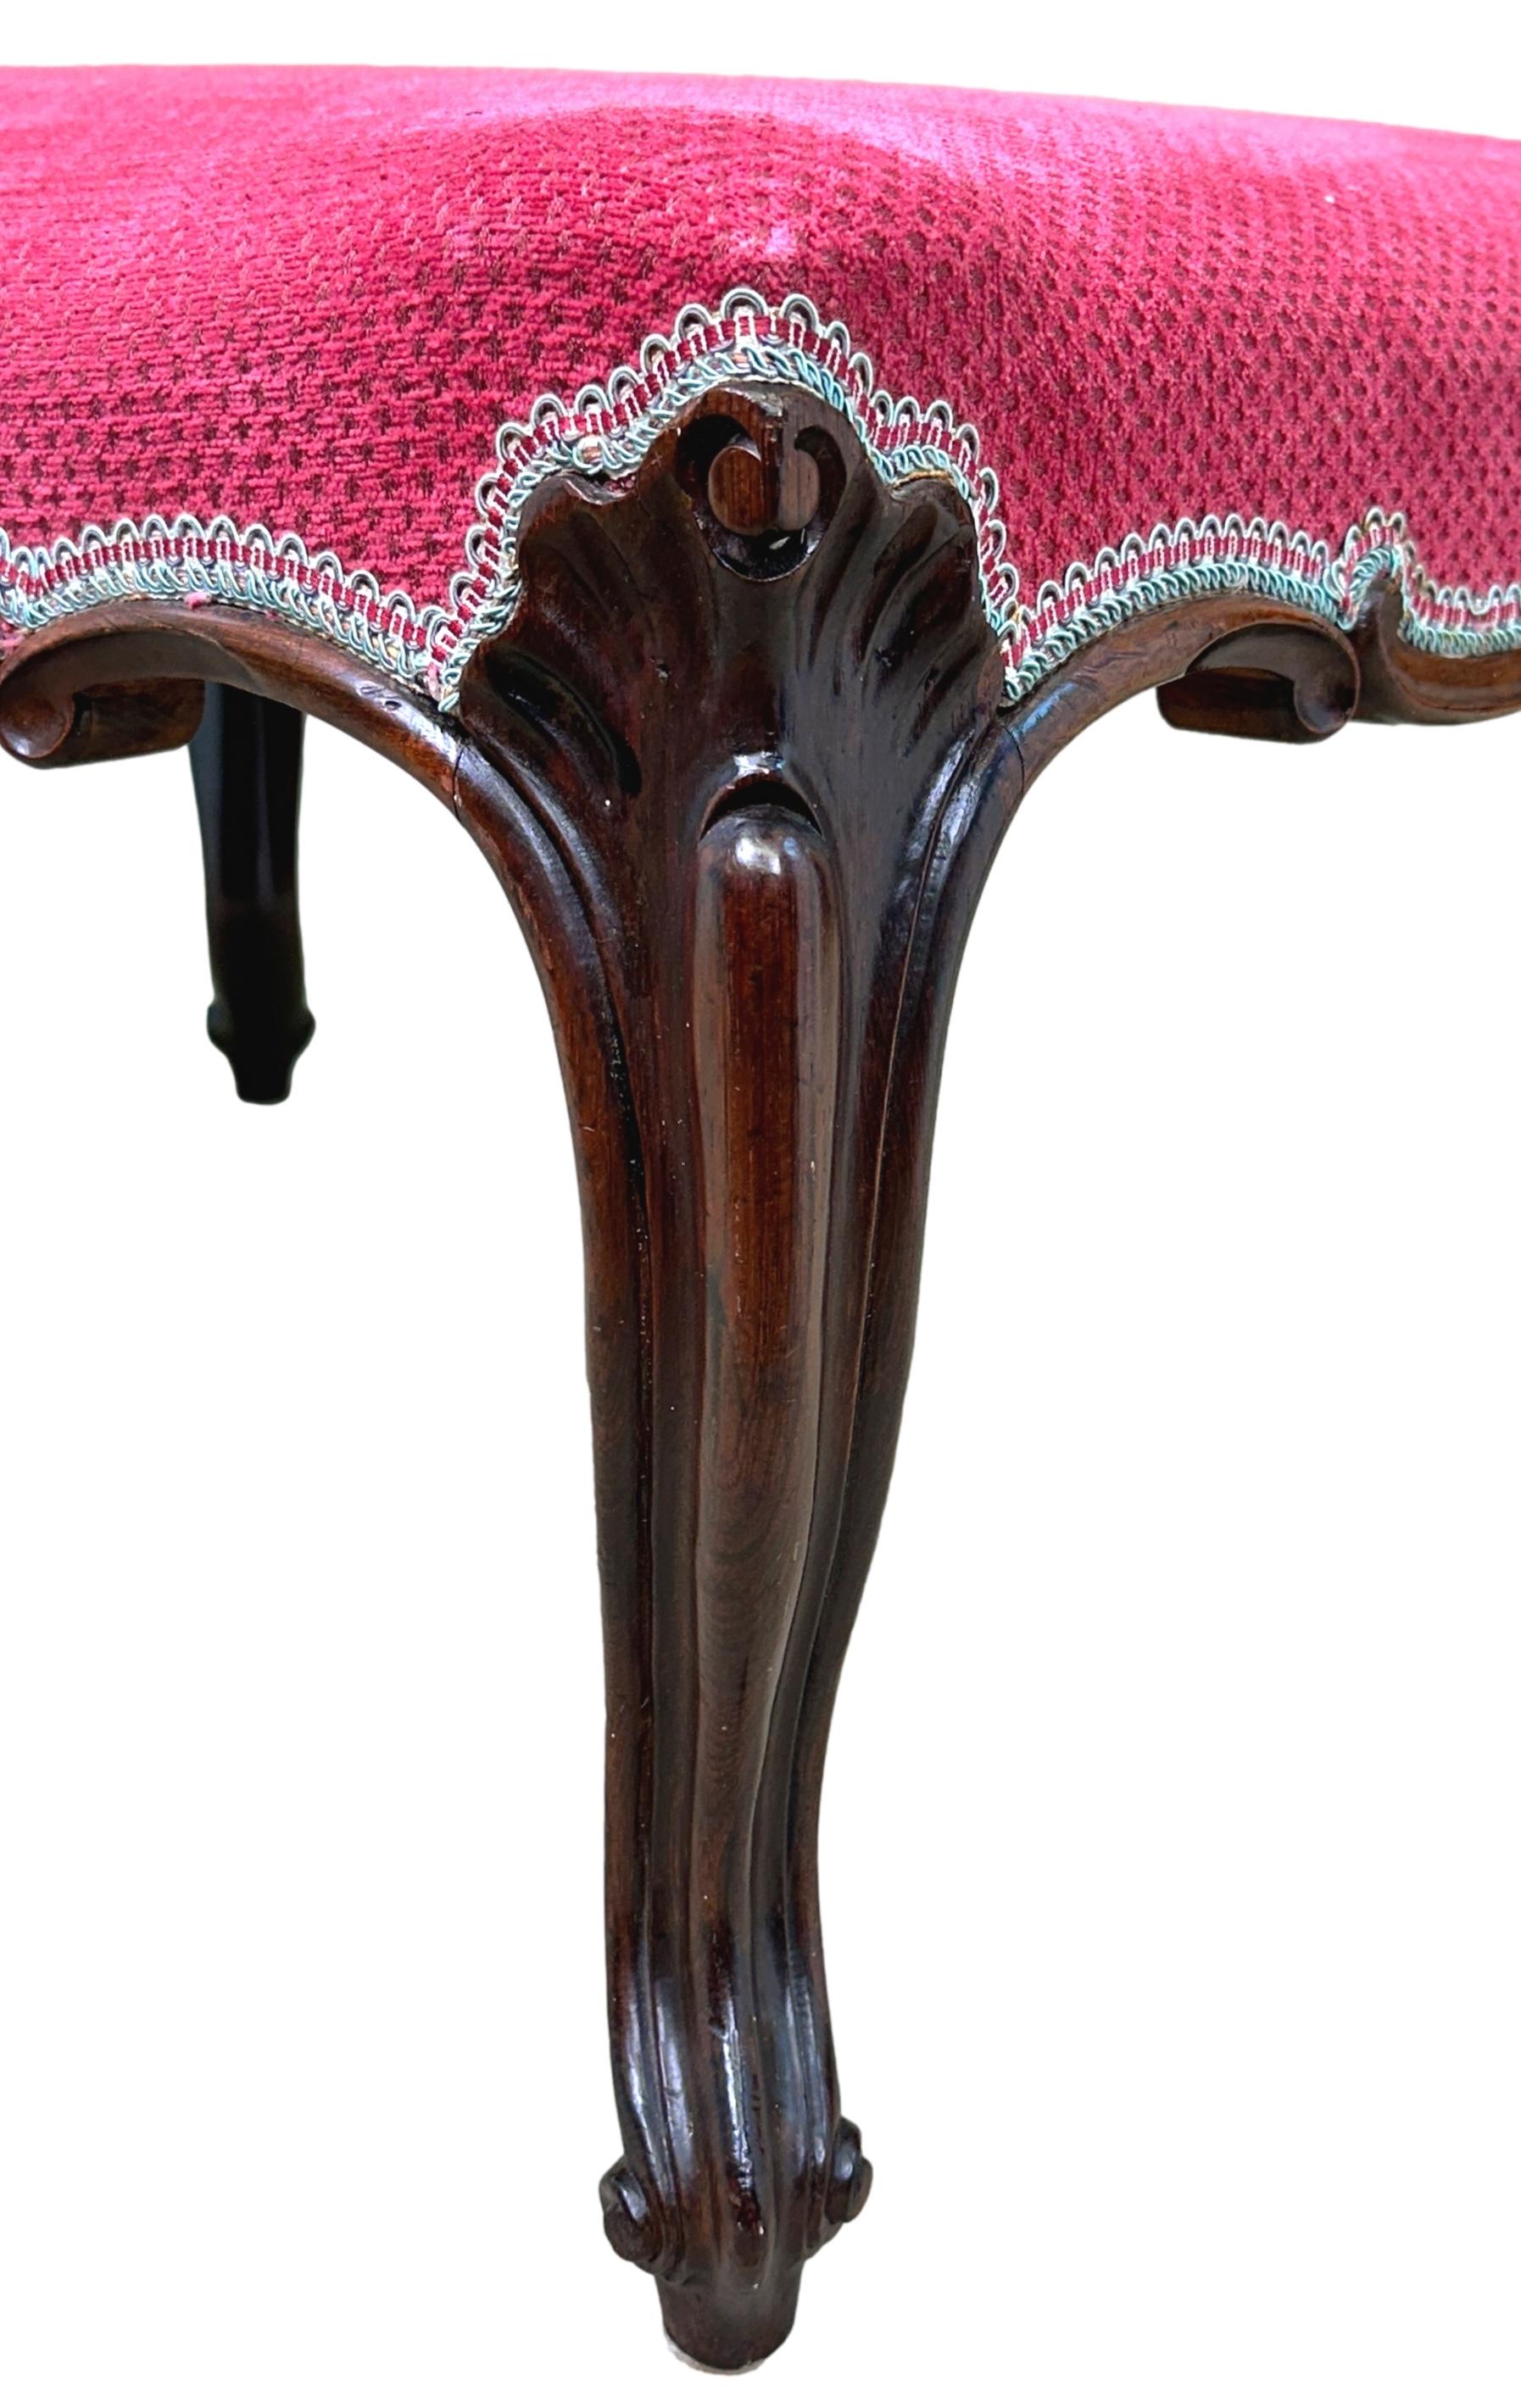 Tabouret de salon en bois de rose de très bonne qualité, datant du milieu du XIXe siècle et de l'époque victorienne, dont le dessus est tapissé et qui repose sur un attrayant cadre mouluré et sculpté, surmonté de quatre élégants pieds cabriole